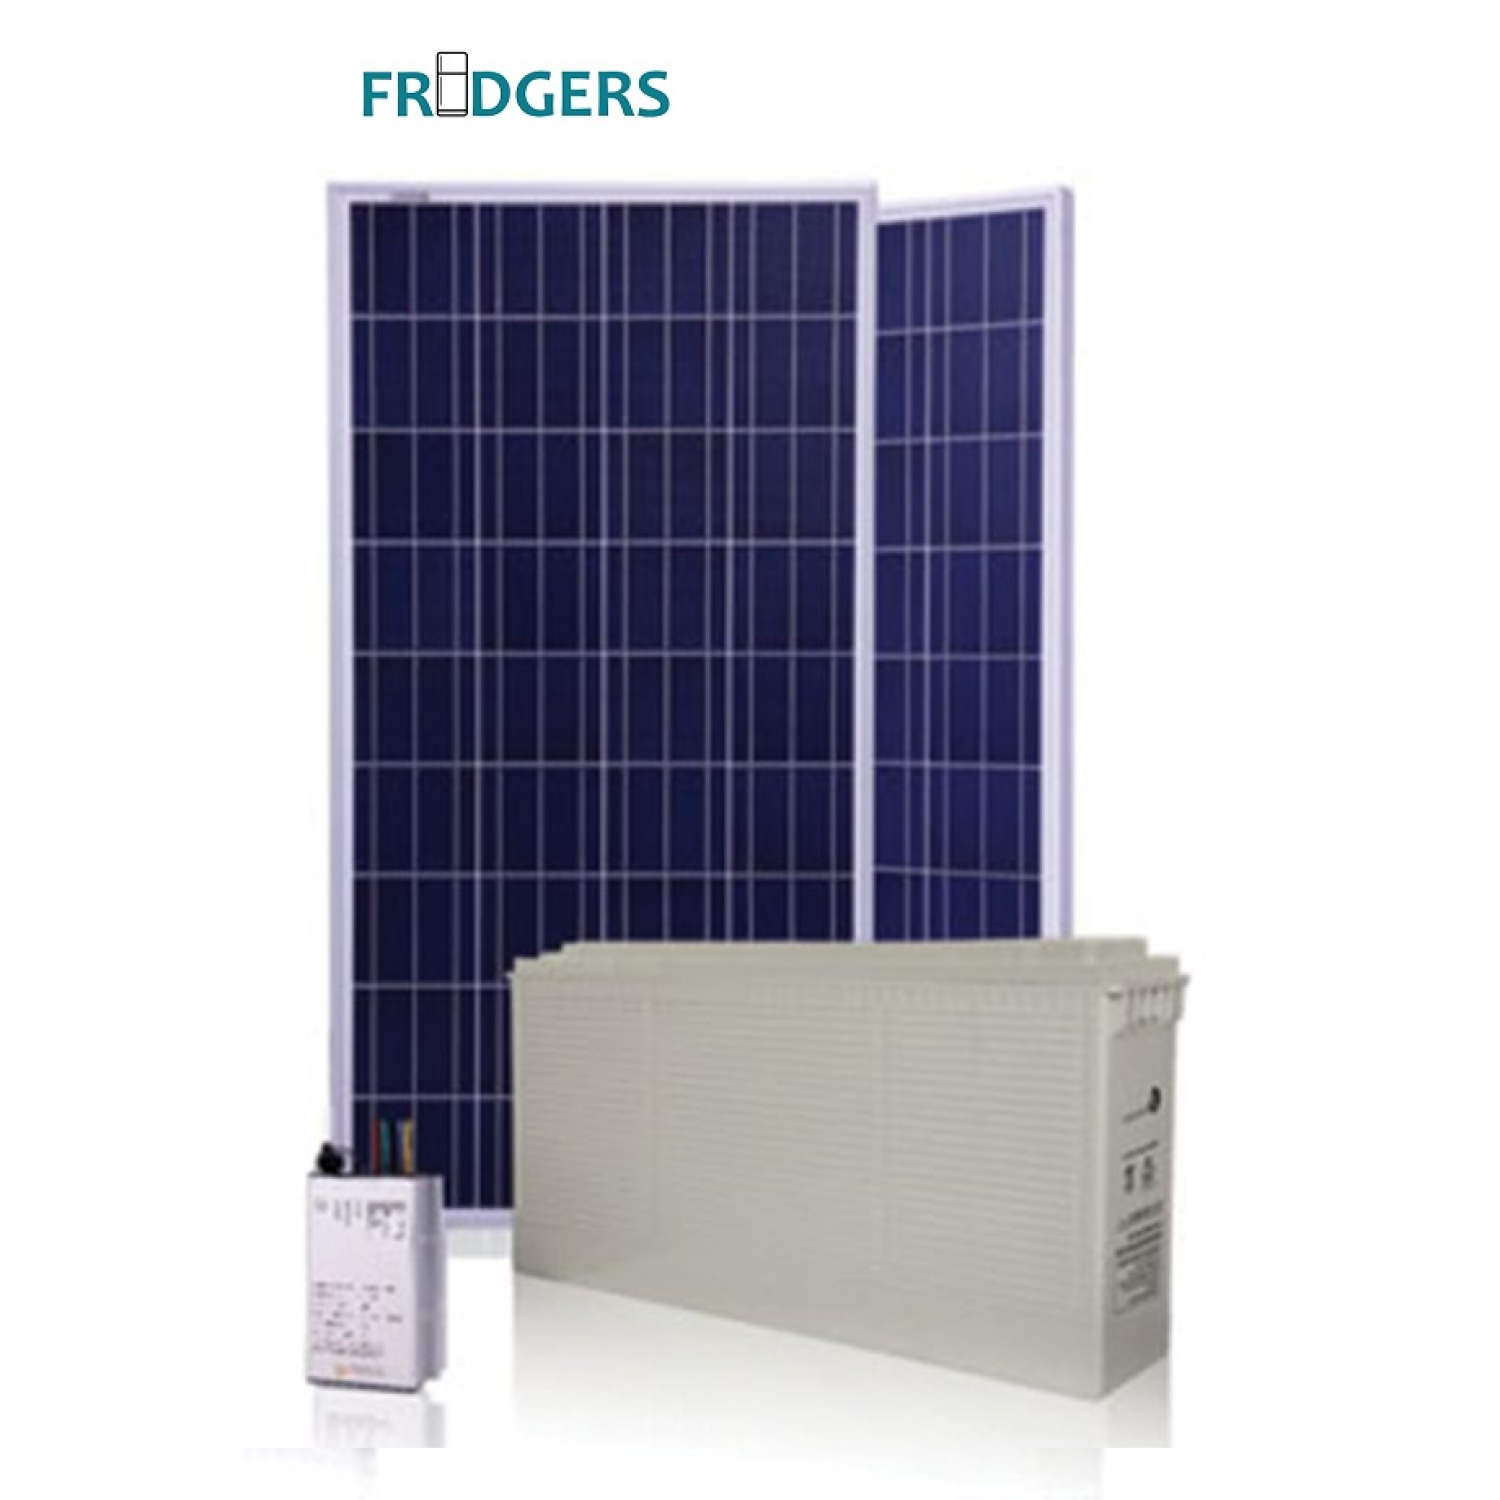 12V Refrigerator Solar Energy Set - Full Time (All Models)